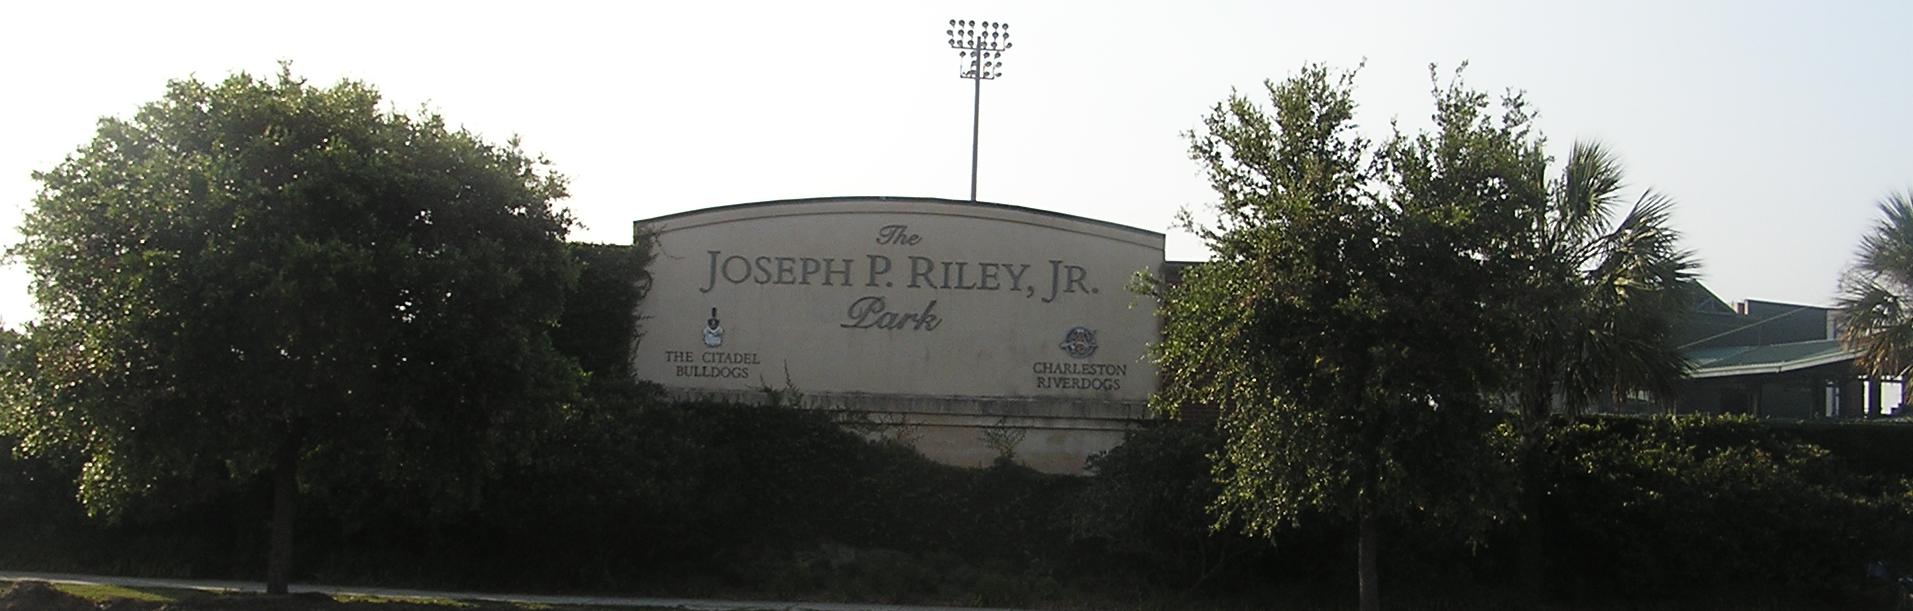 Joseph P Riley Jr. Park - Charleston, SC